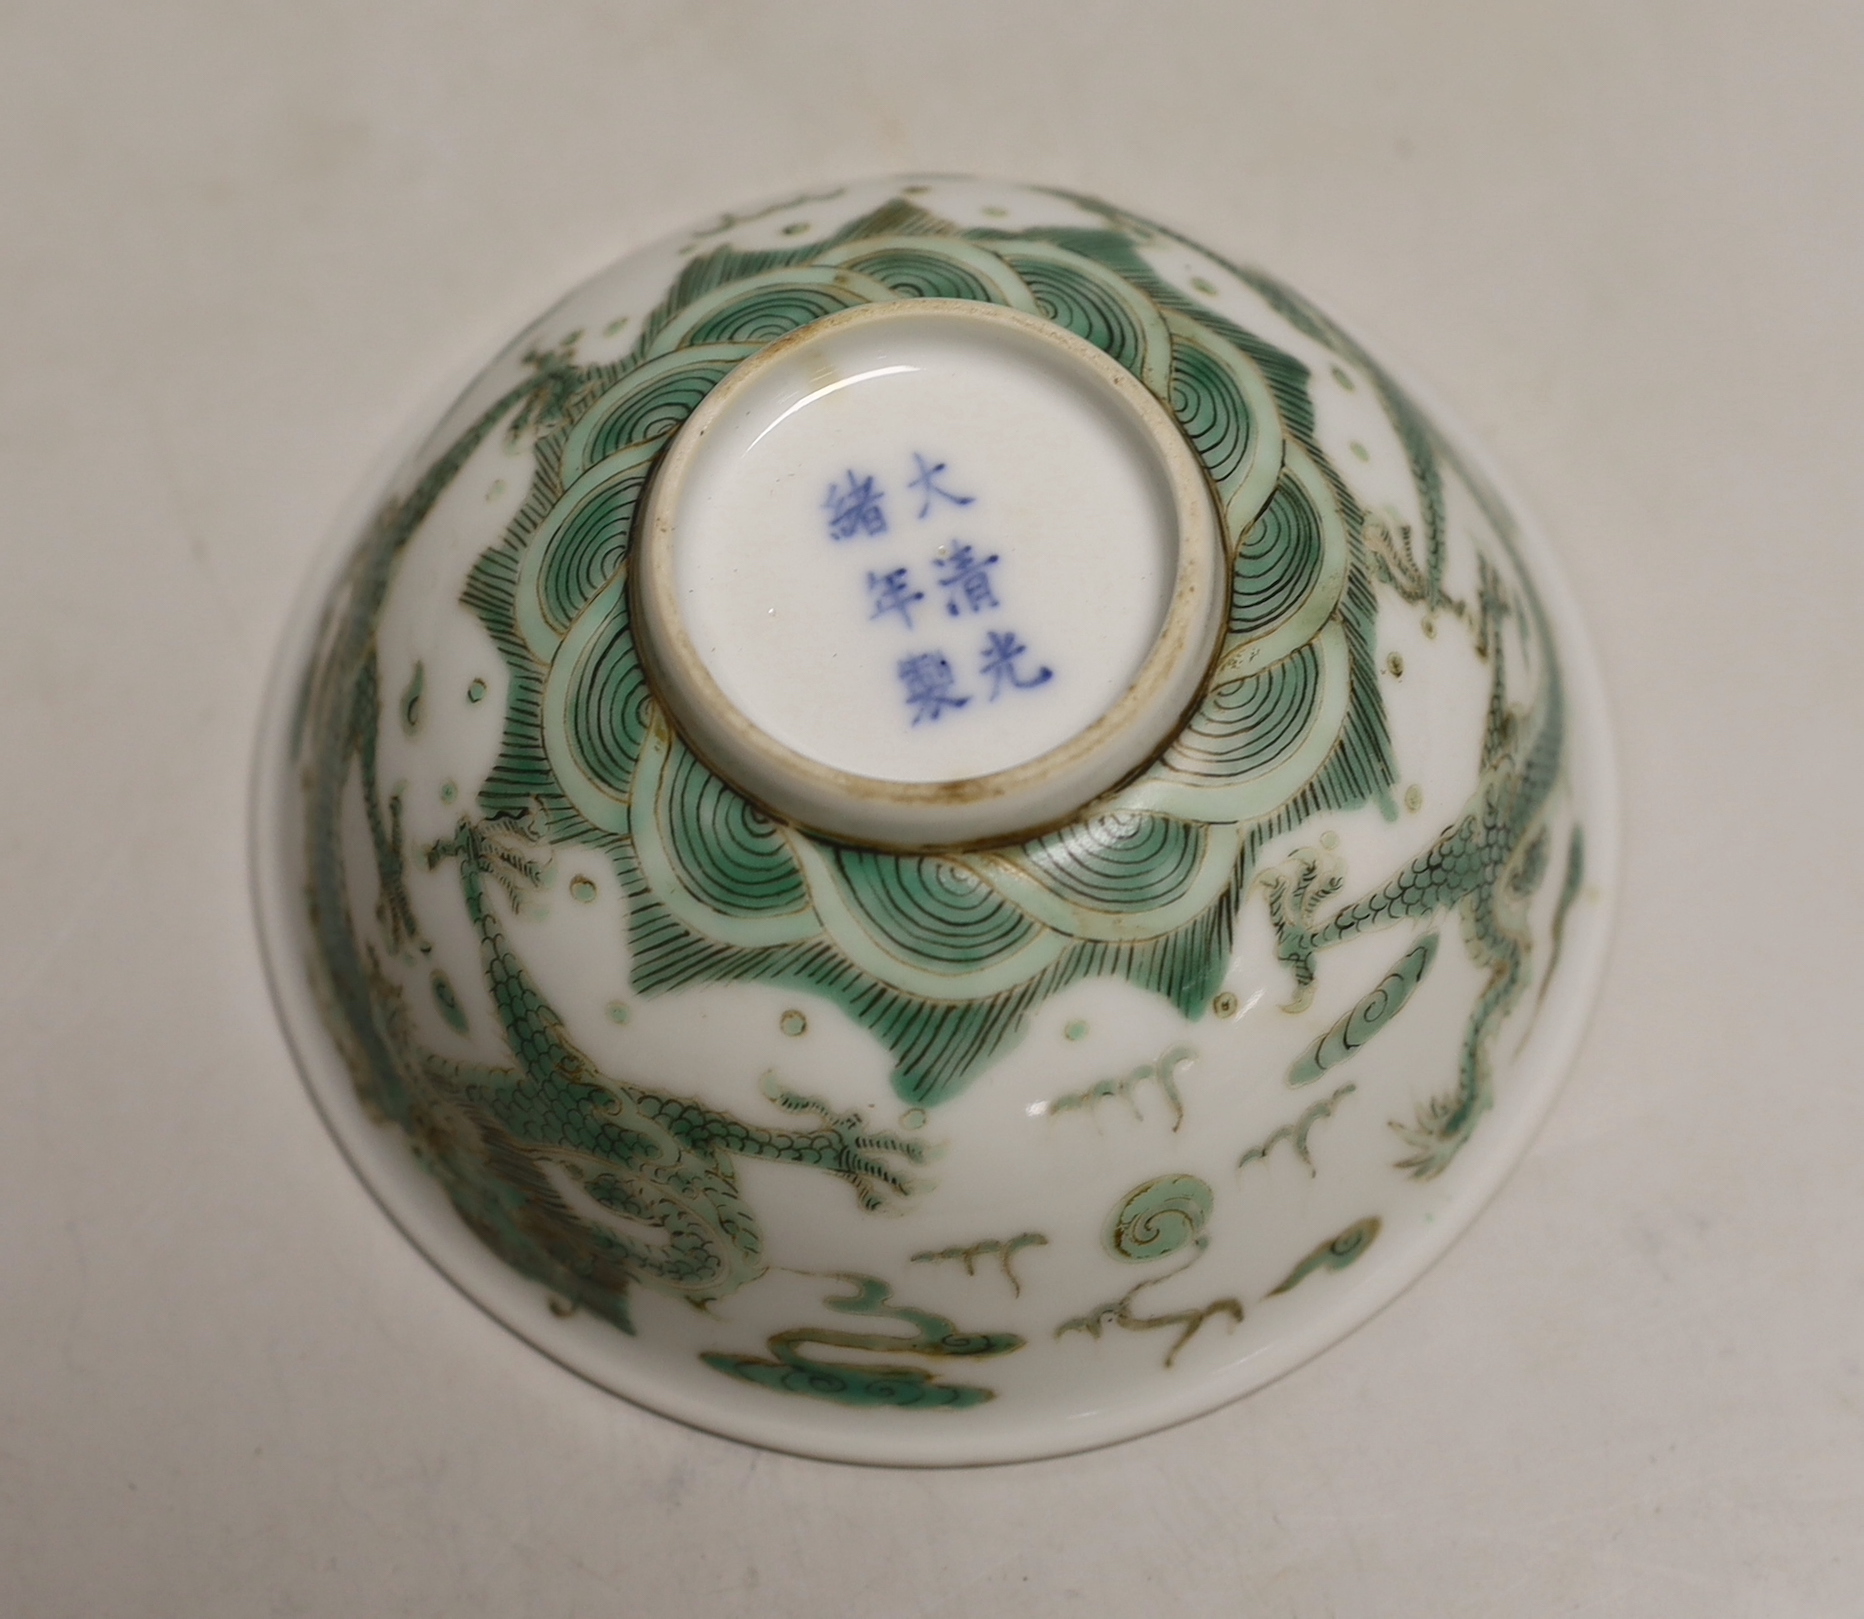 A Chinese famille verte bowl, 11.5cm diameter